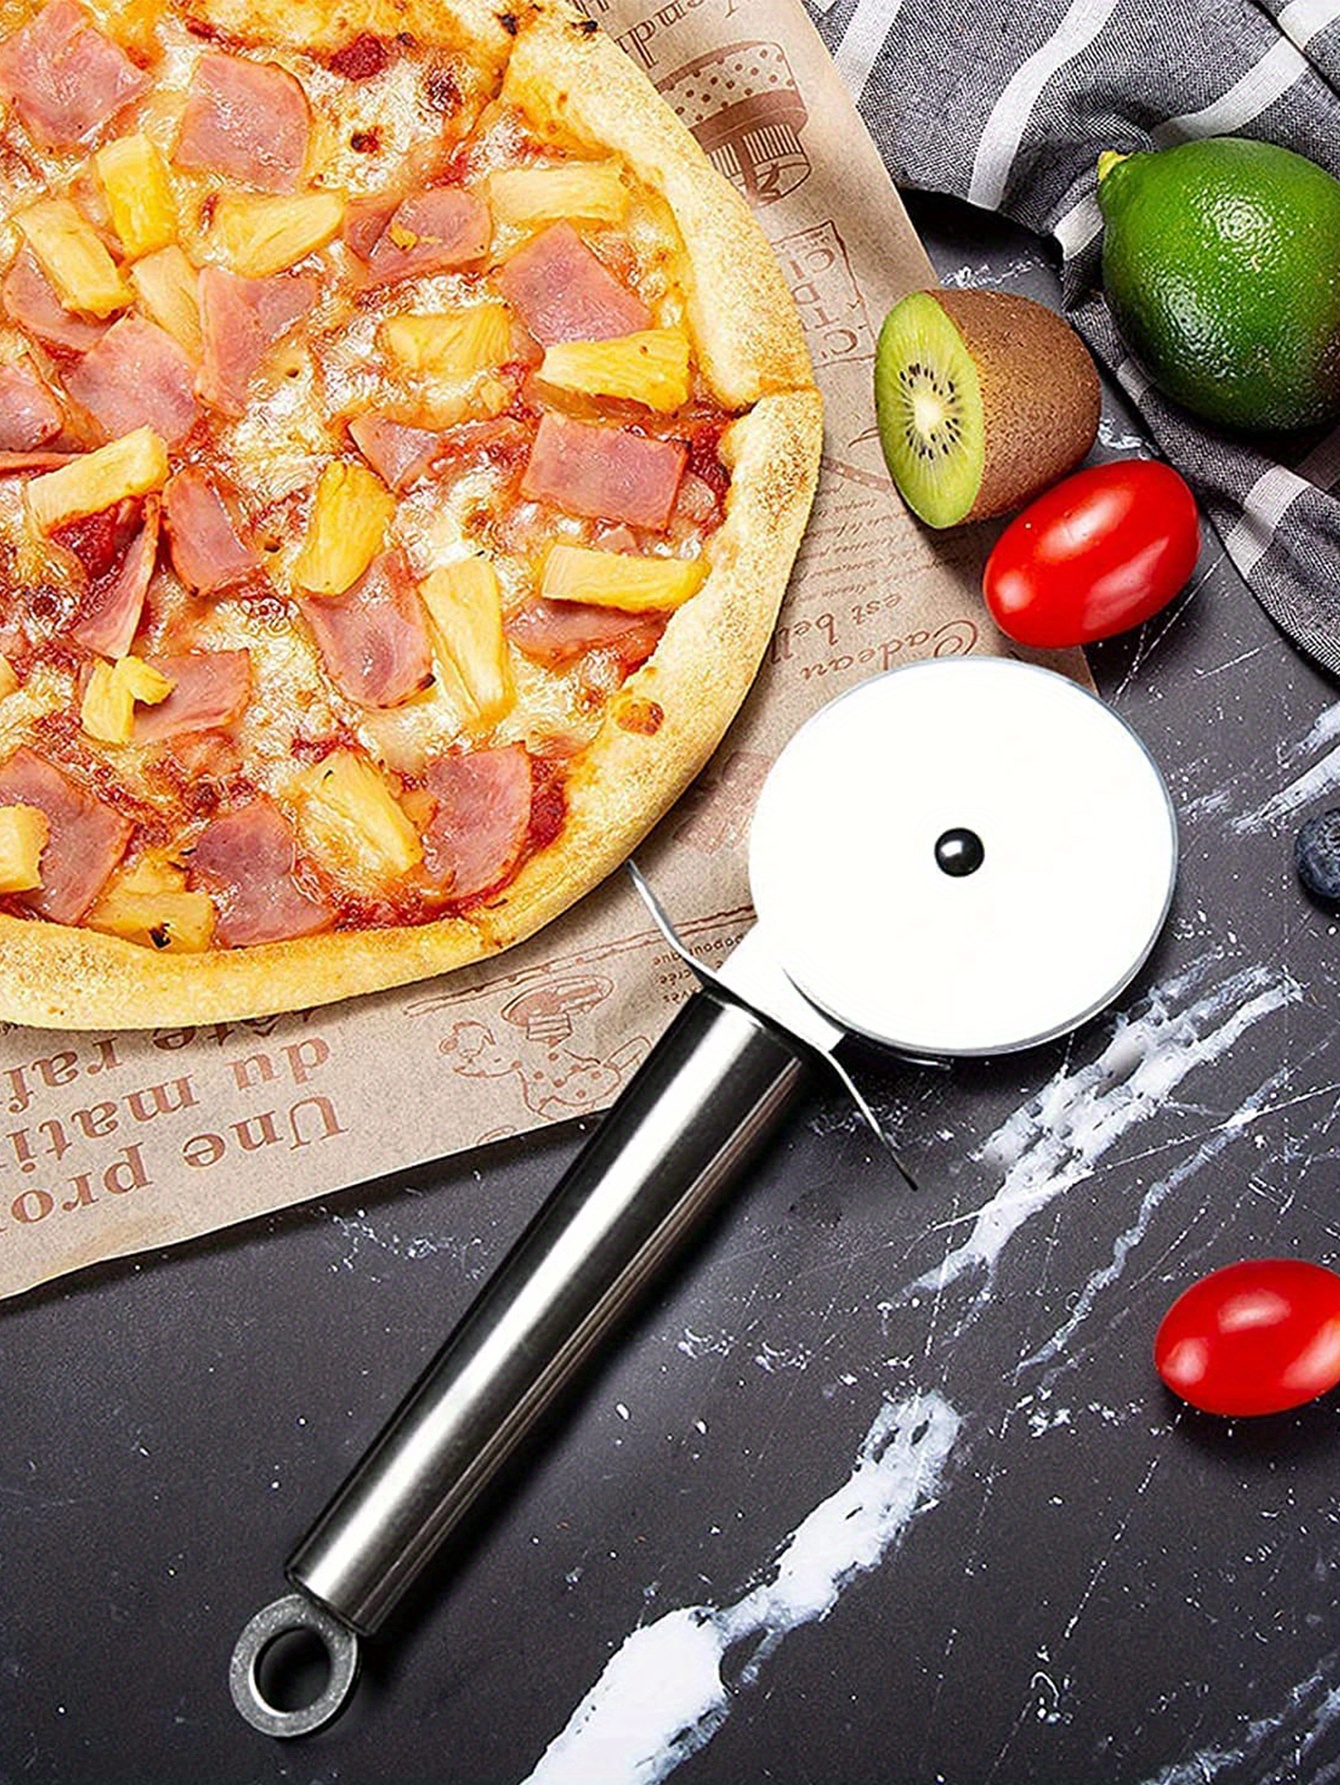  ALLTOP Cortador de pizza, cuchillo de hoja de acero inoxidable  con doble mango de madera y cubierta de plástico, gran rebanadora/picadora  de pizza, buena herramienta de cocina, 14 pulgadas : Hogar